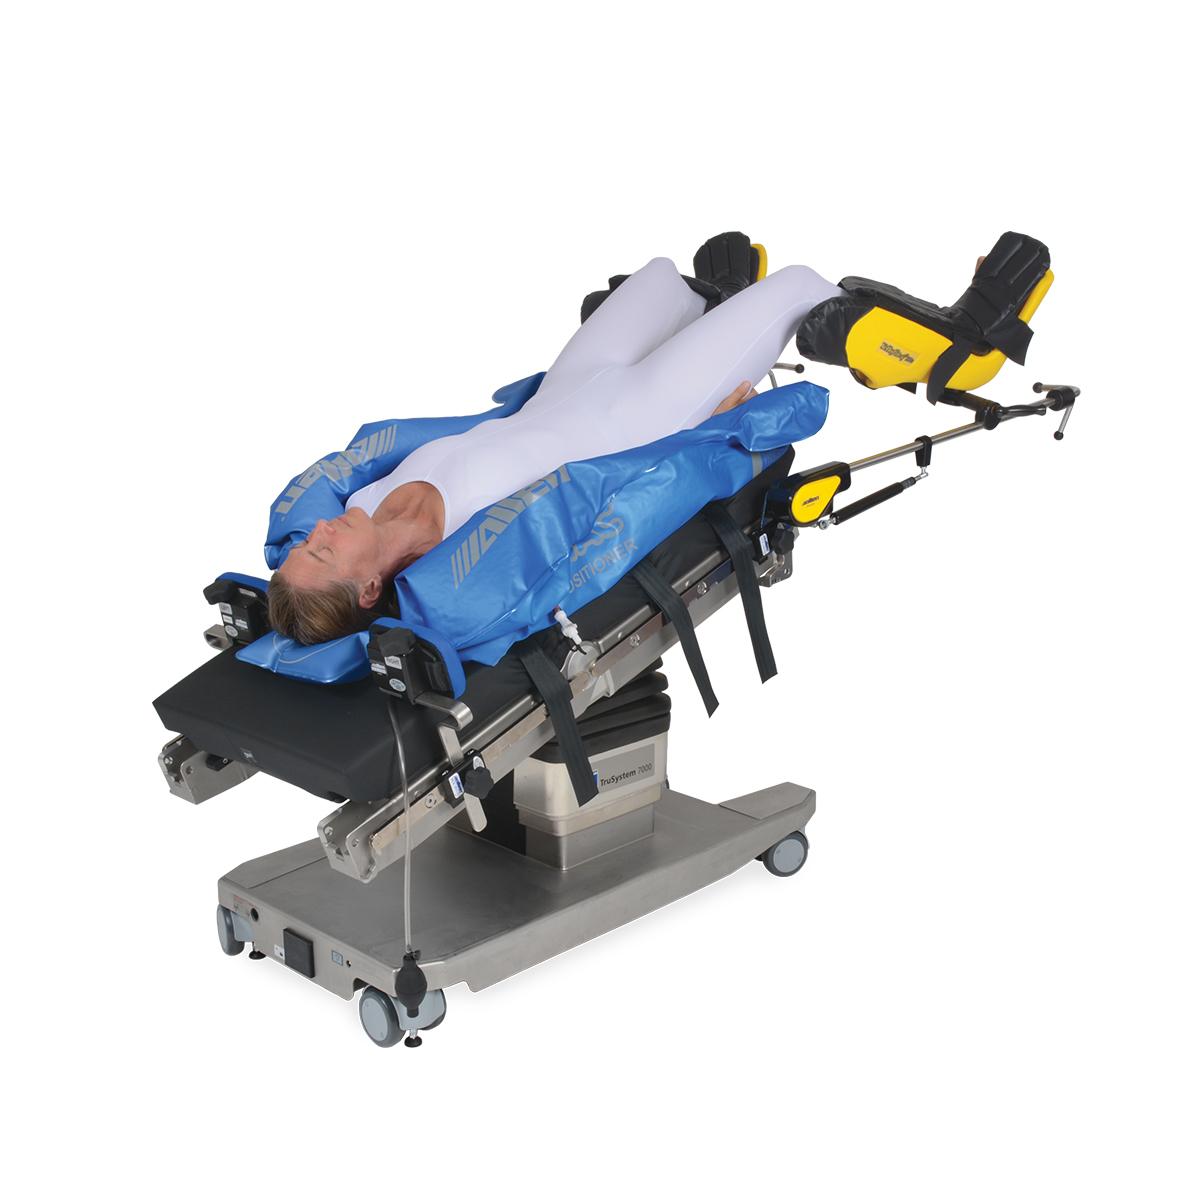 Allen Hug-U-Vac Steep Trend Positioner, vista diagonale con il paziente